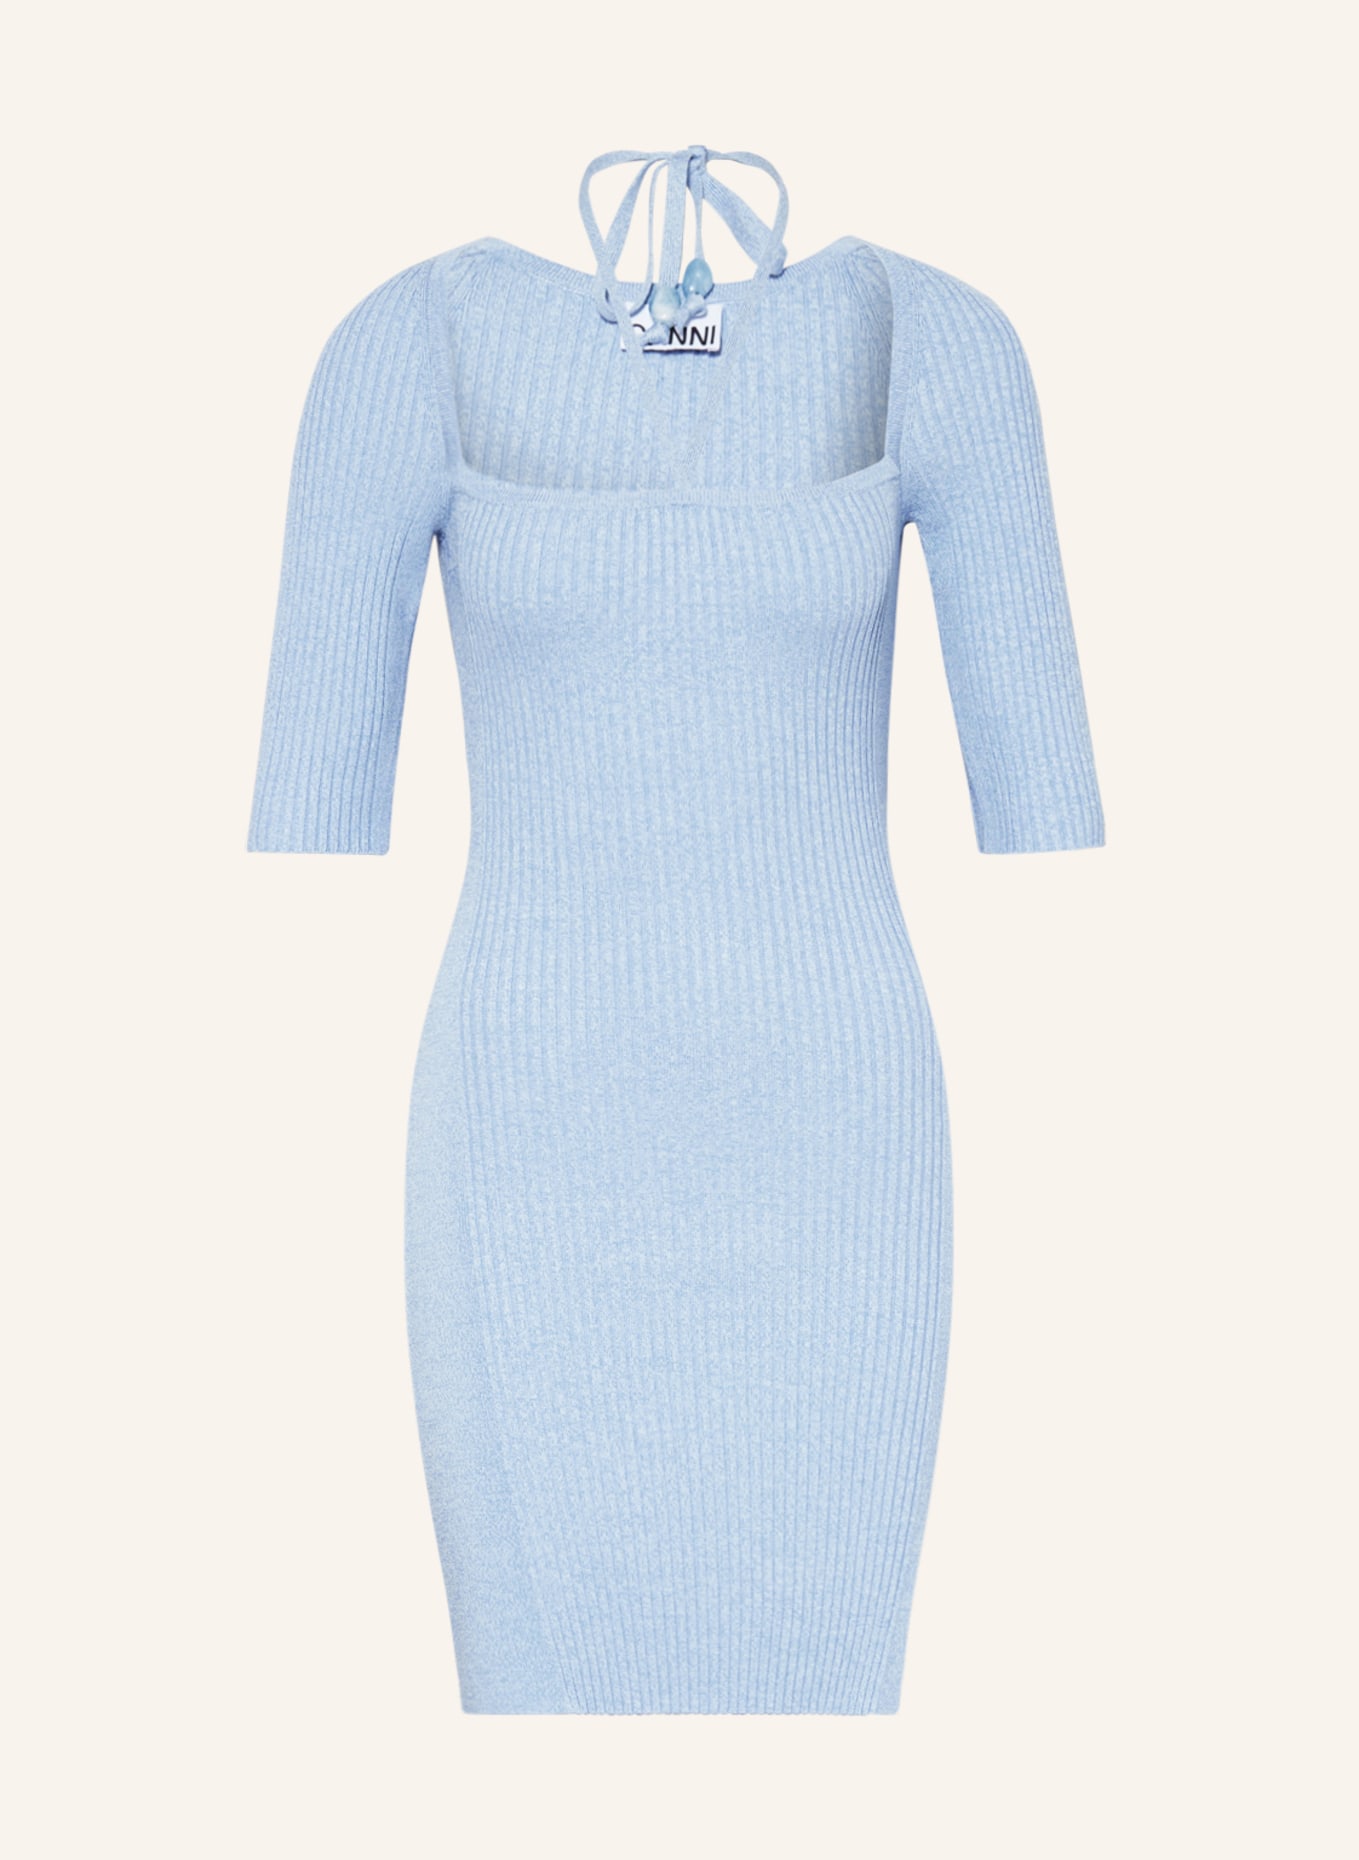 GANNI Knit dress, Color: LIGHT BLUE (Image 1)